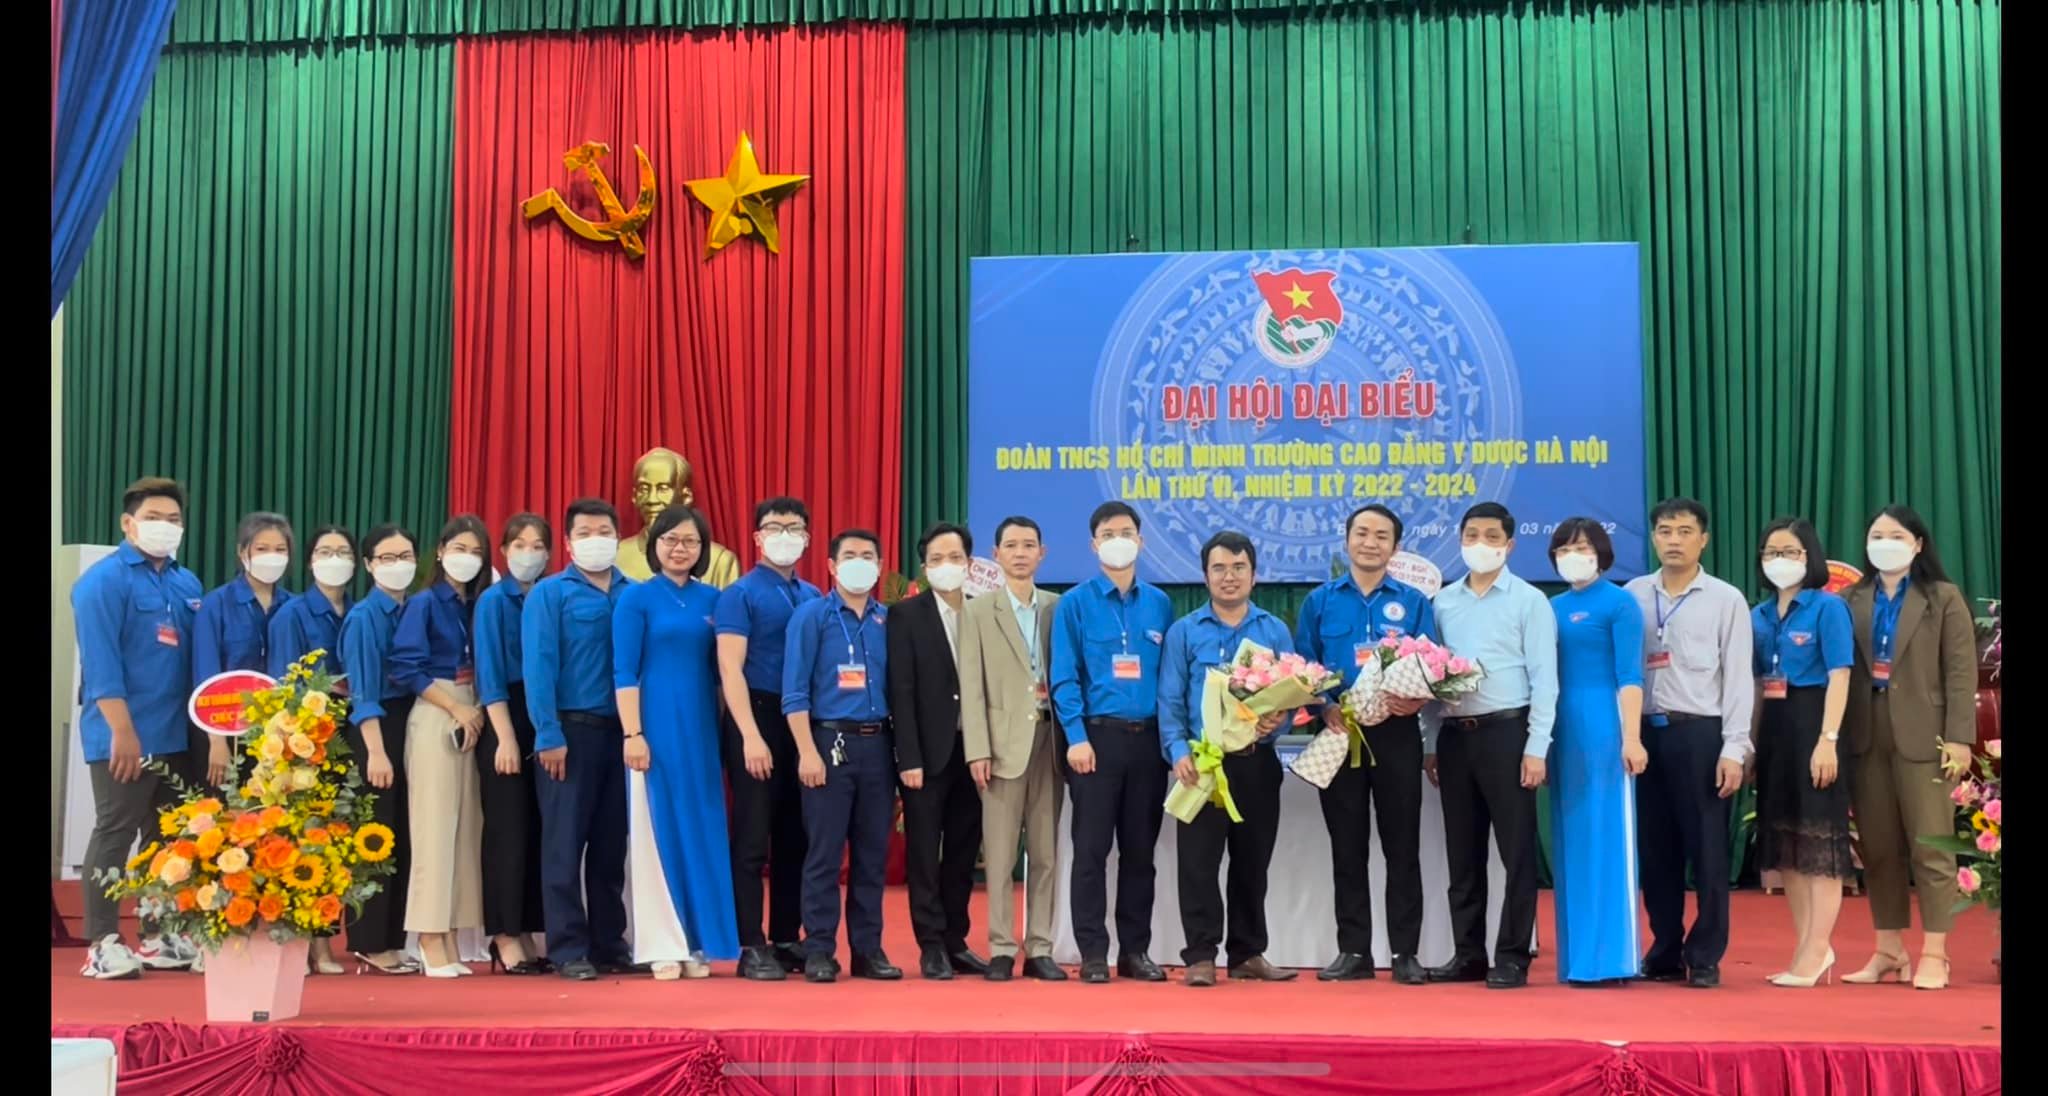 Đại hội Đoàn thanh niên Cộng sản Hồ Chí Minh trường Cao đẳng Y Dược Hà Nội lần thứ VI, nhiệm kỳ 2022-2024